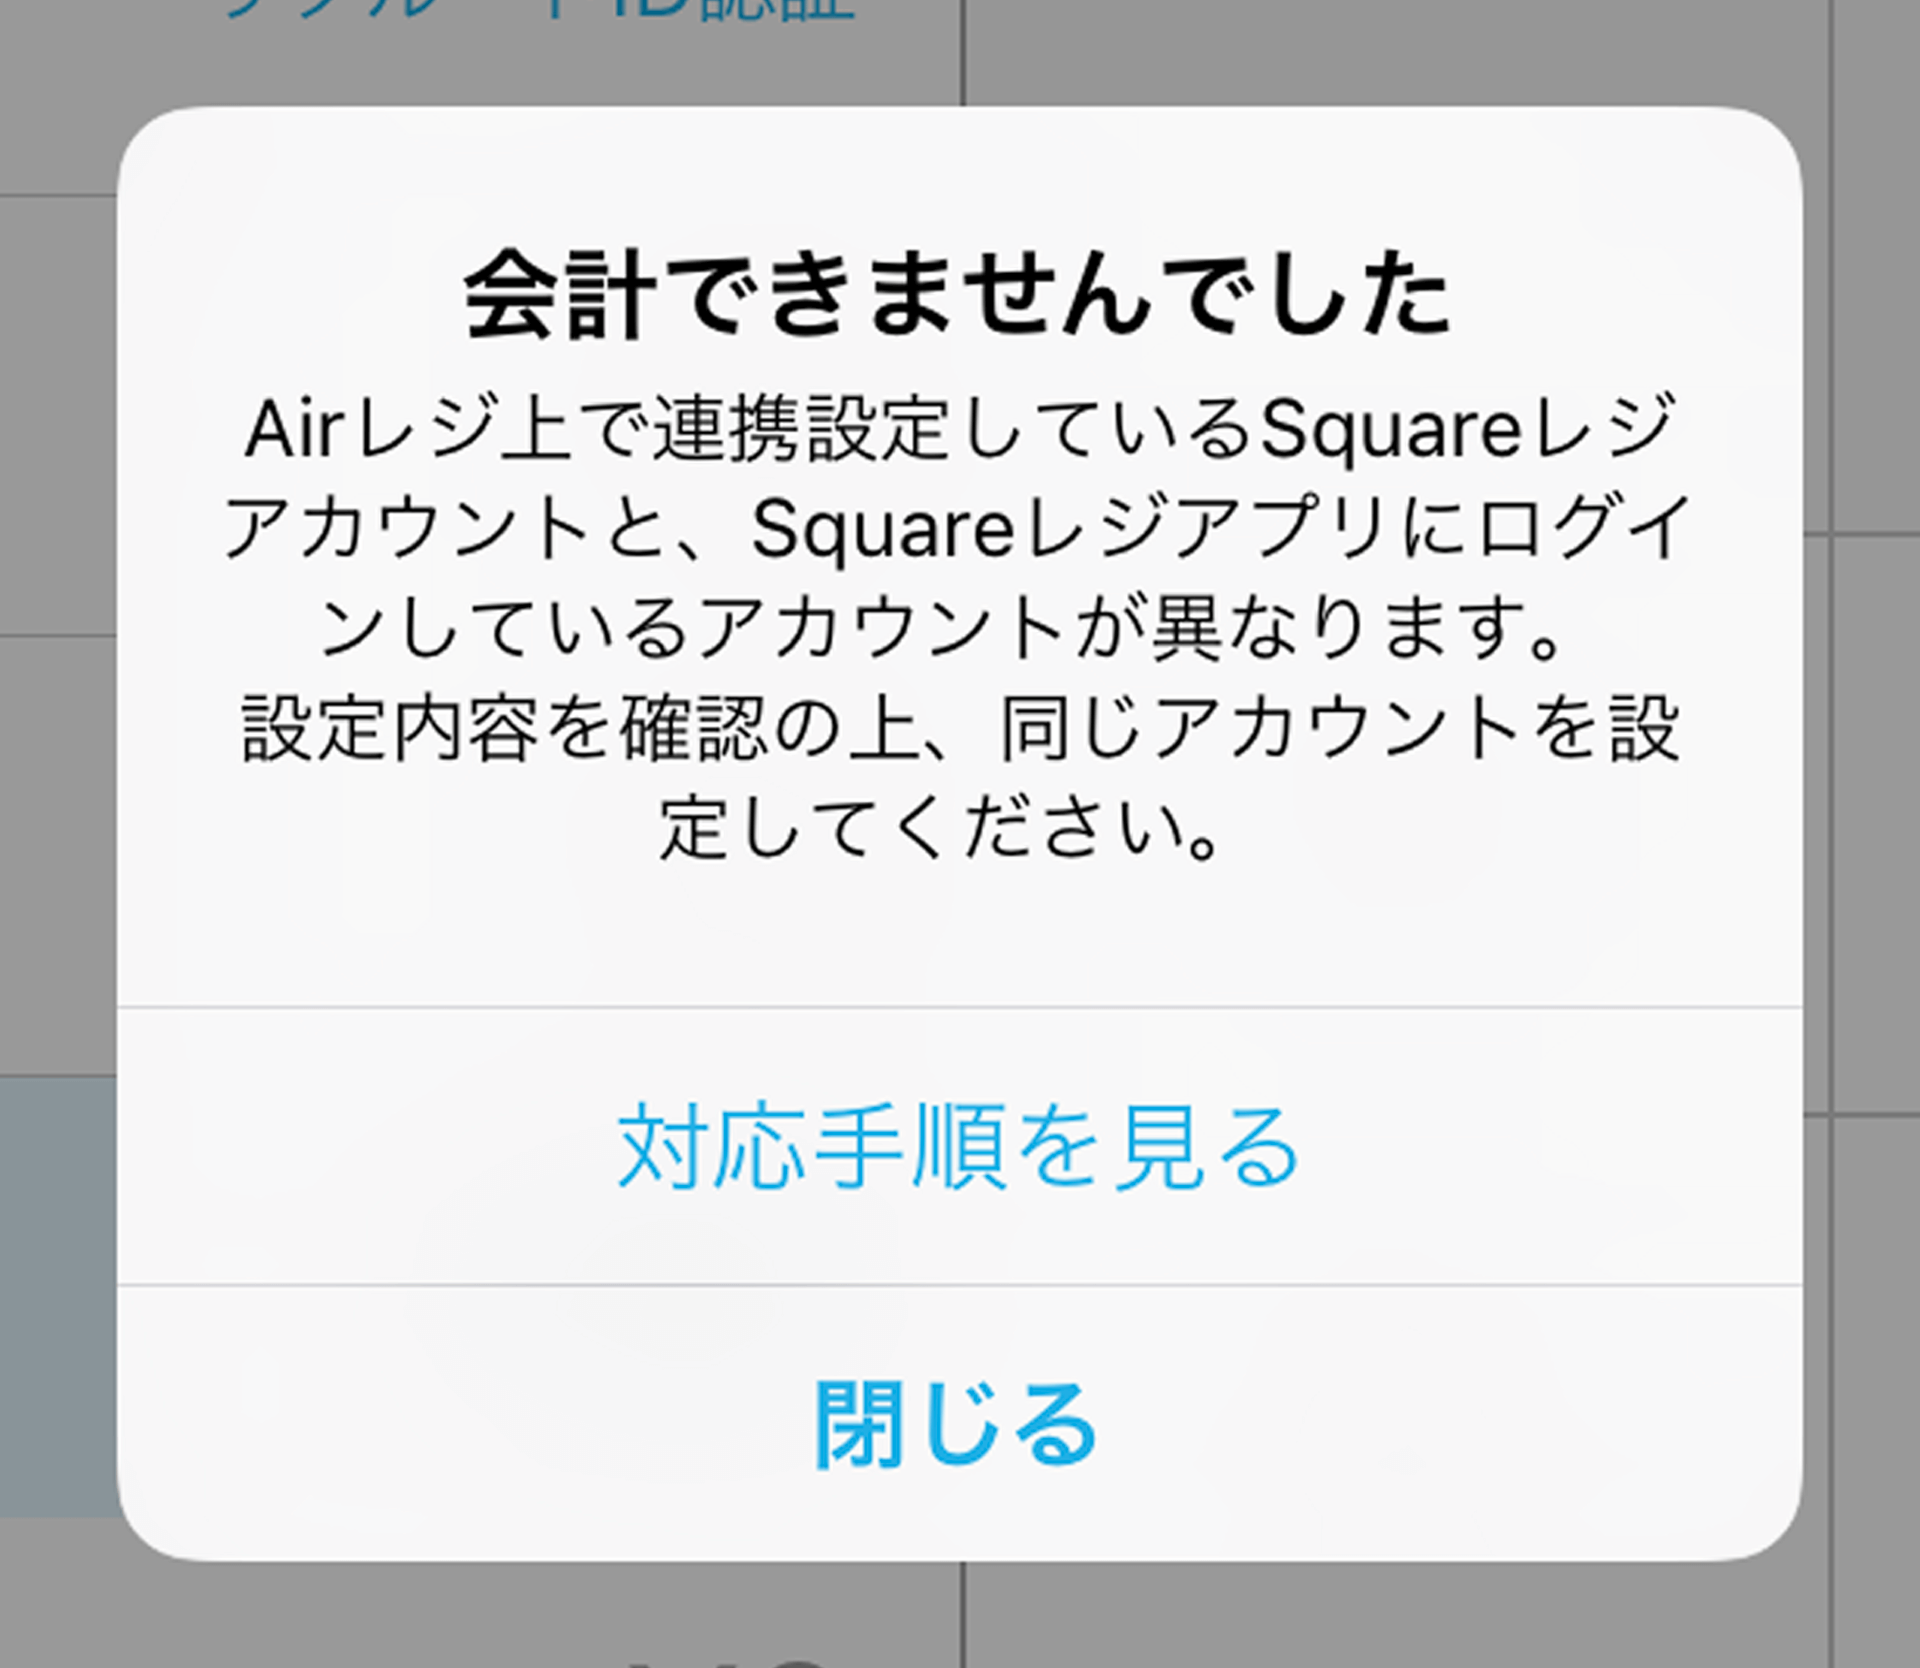 Airレジ上で連携設定しているSquareレジアカウントと、Squareレジアプリにログインしているアカウントが異なります。設定内容を確認の上、同じアカウントを設定してください。